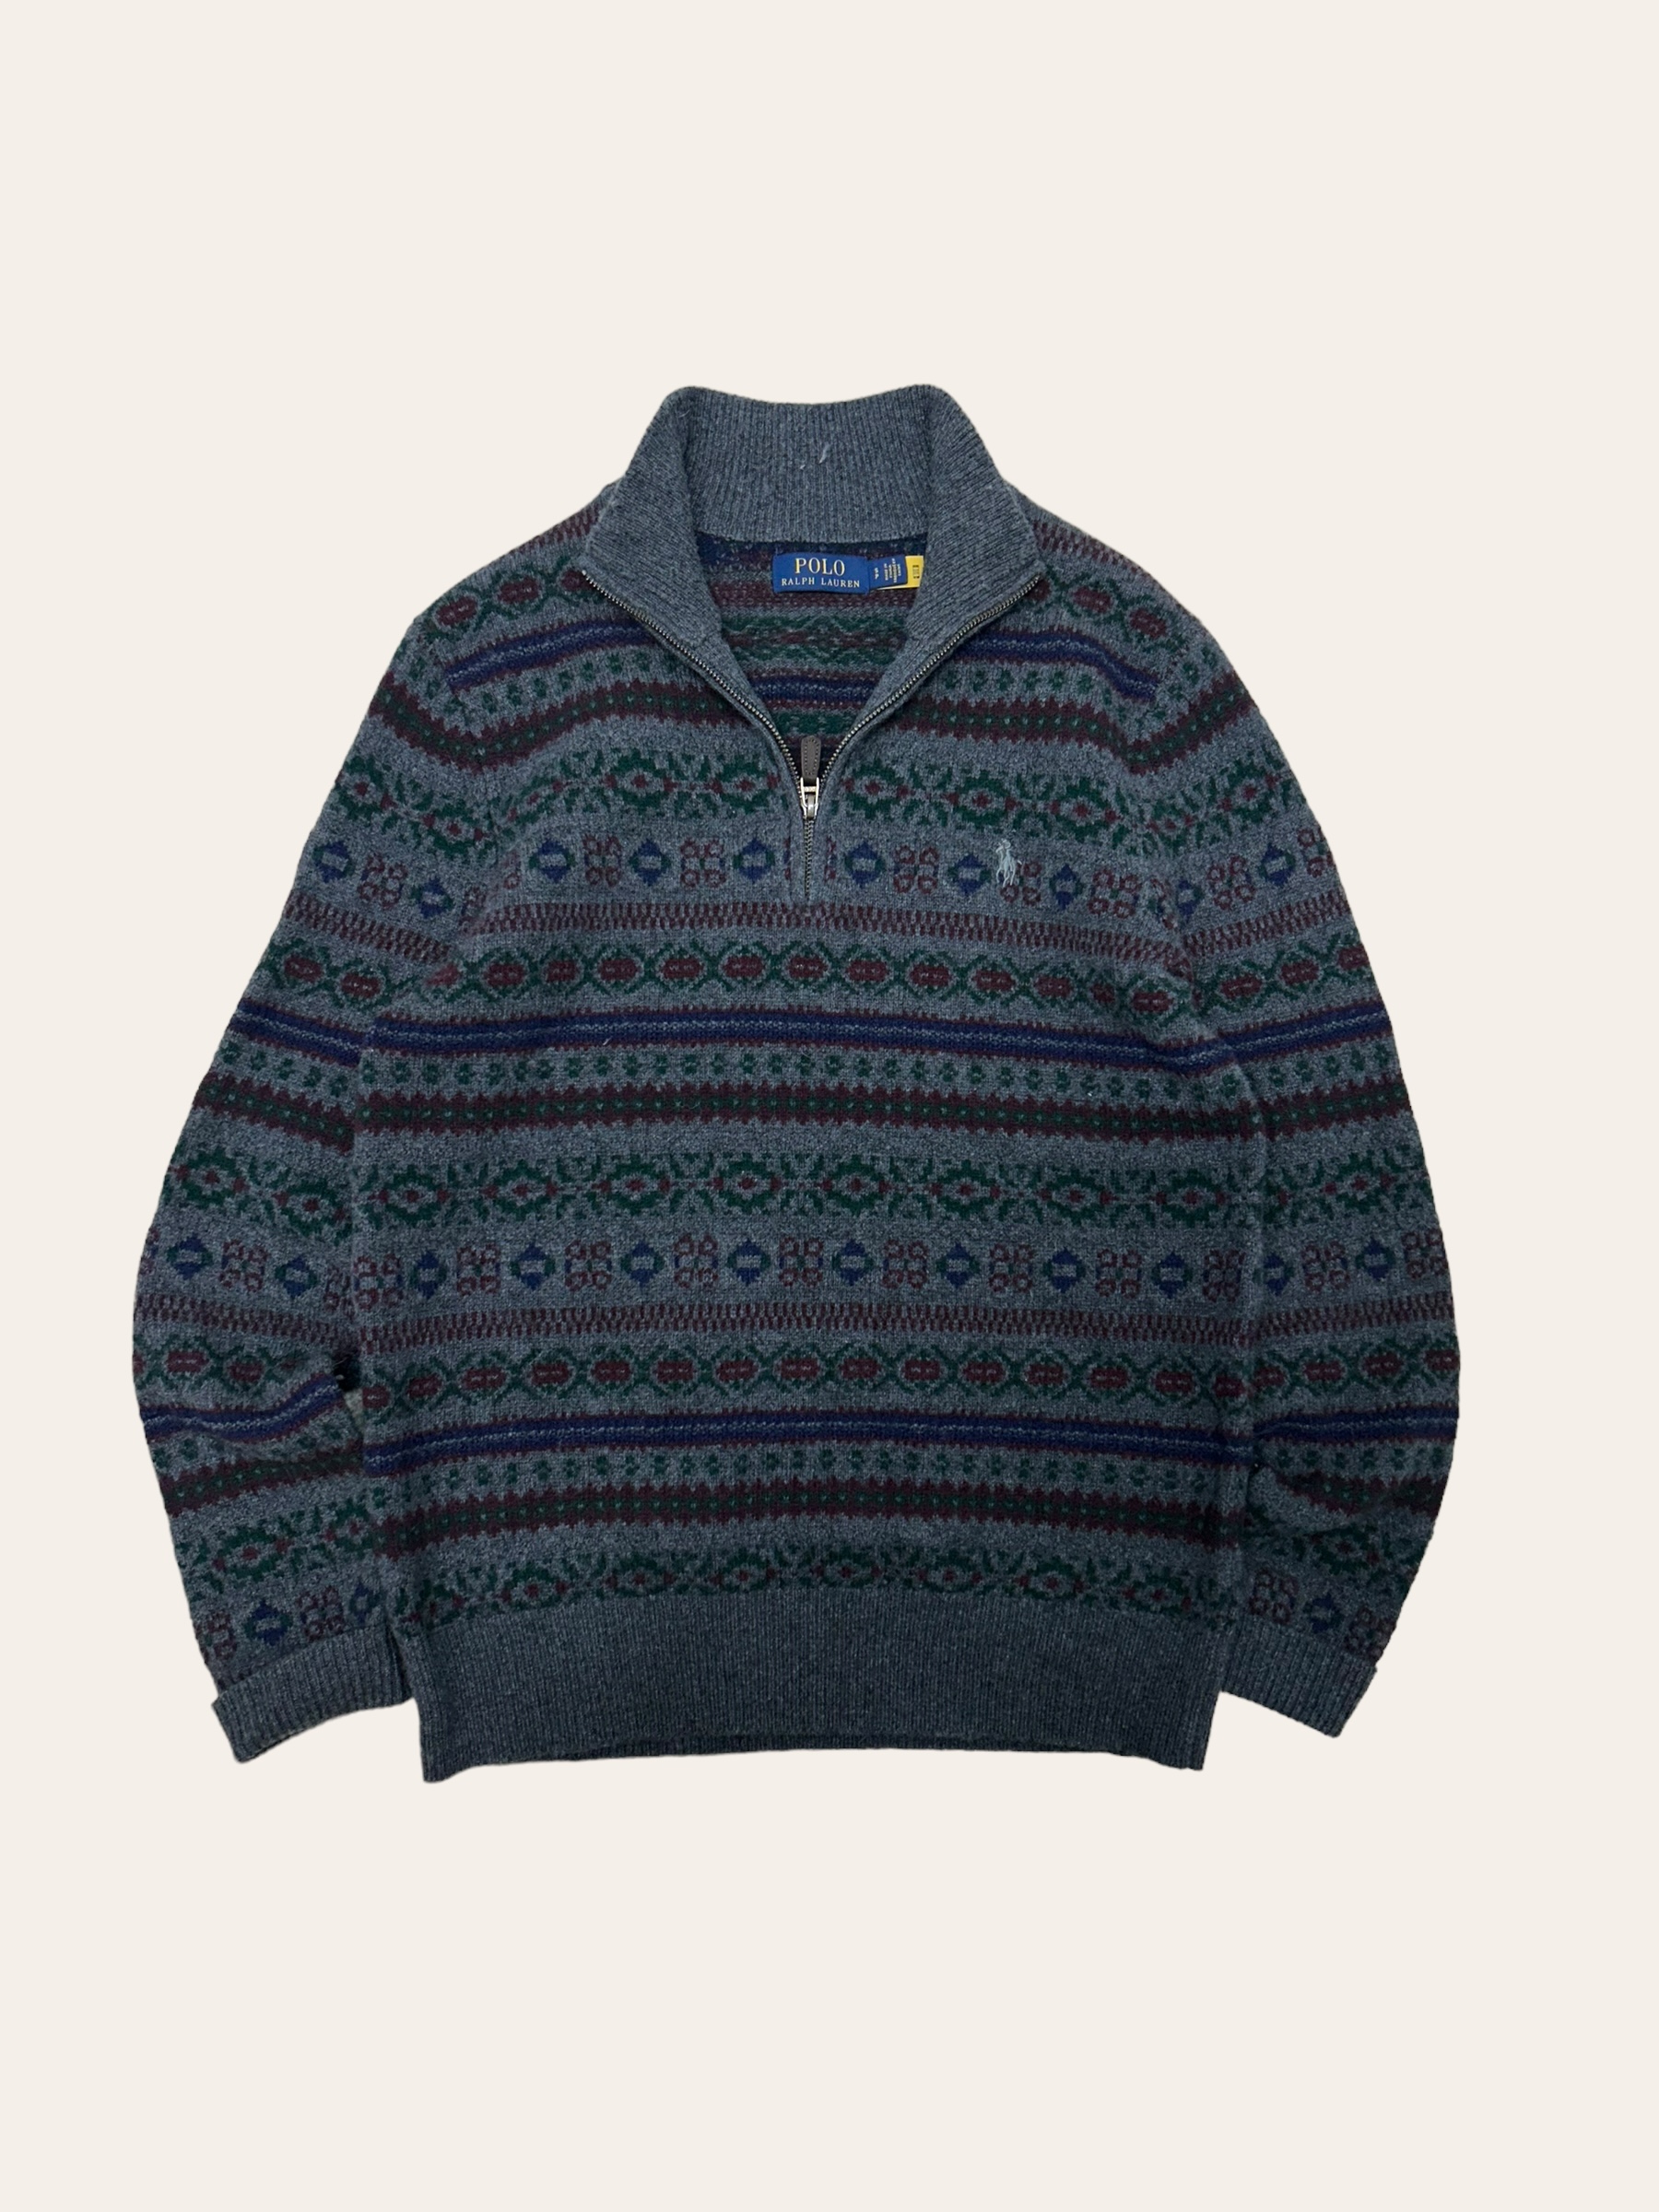 Polo ralph lauren khaki color cashmere blend fair isle pullover S